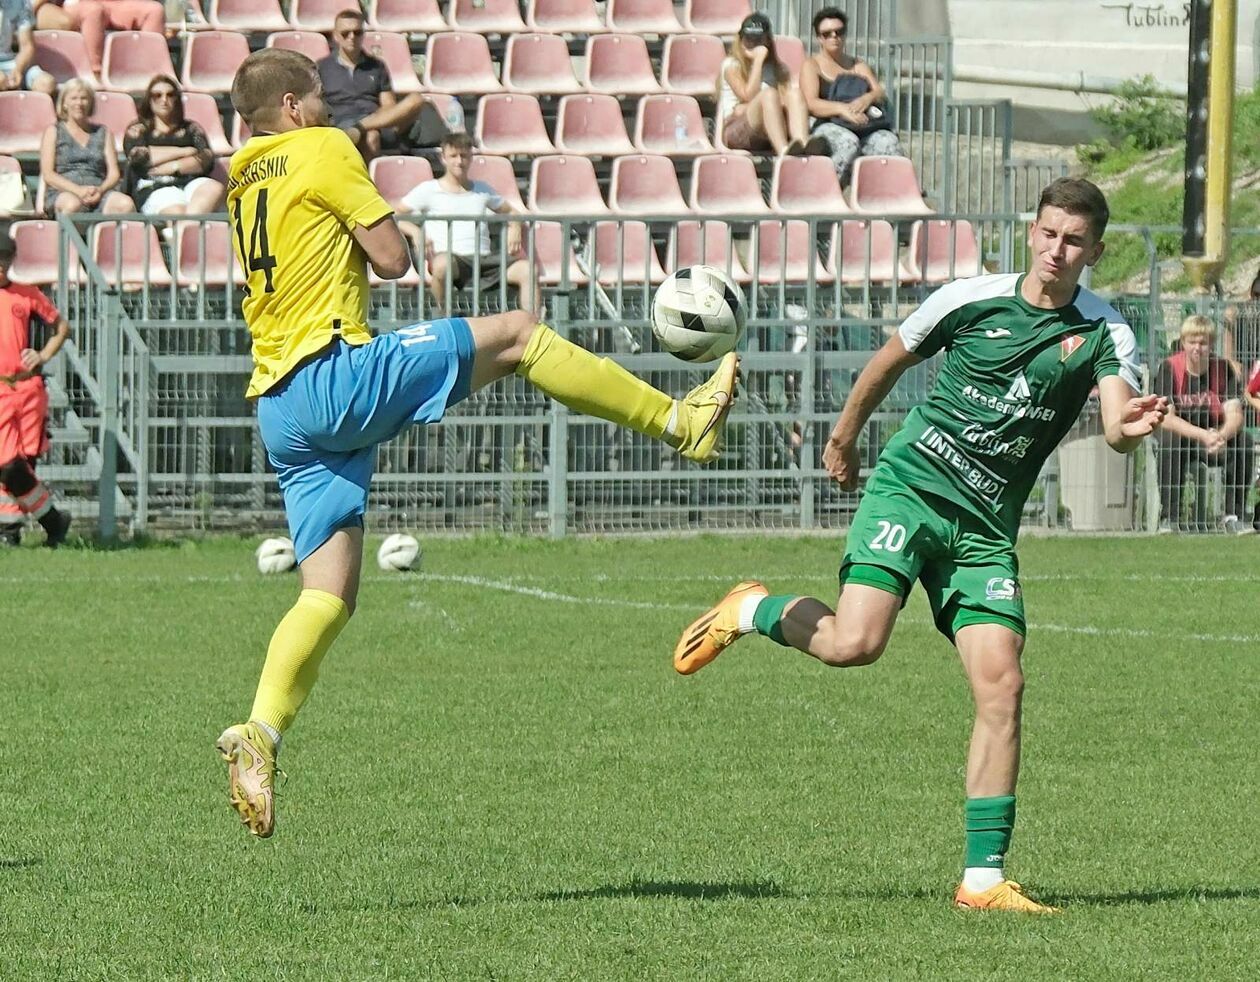  Lublinianka vs Stal Kraśnik 0:2 (zdjęcie 10) - Autor: DW